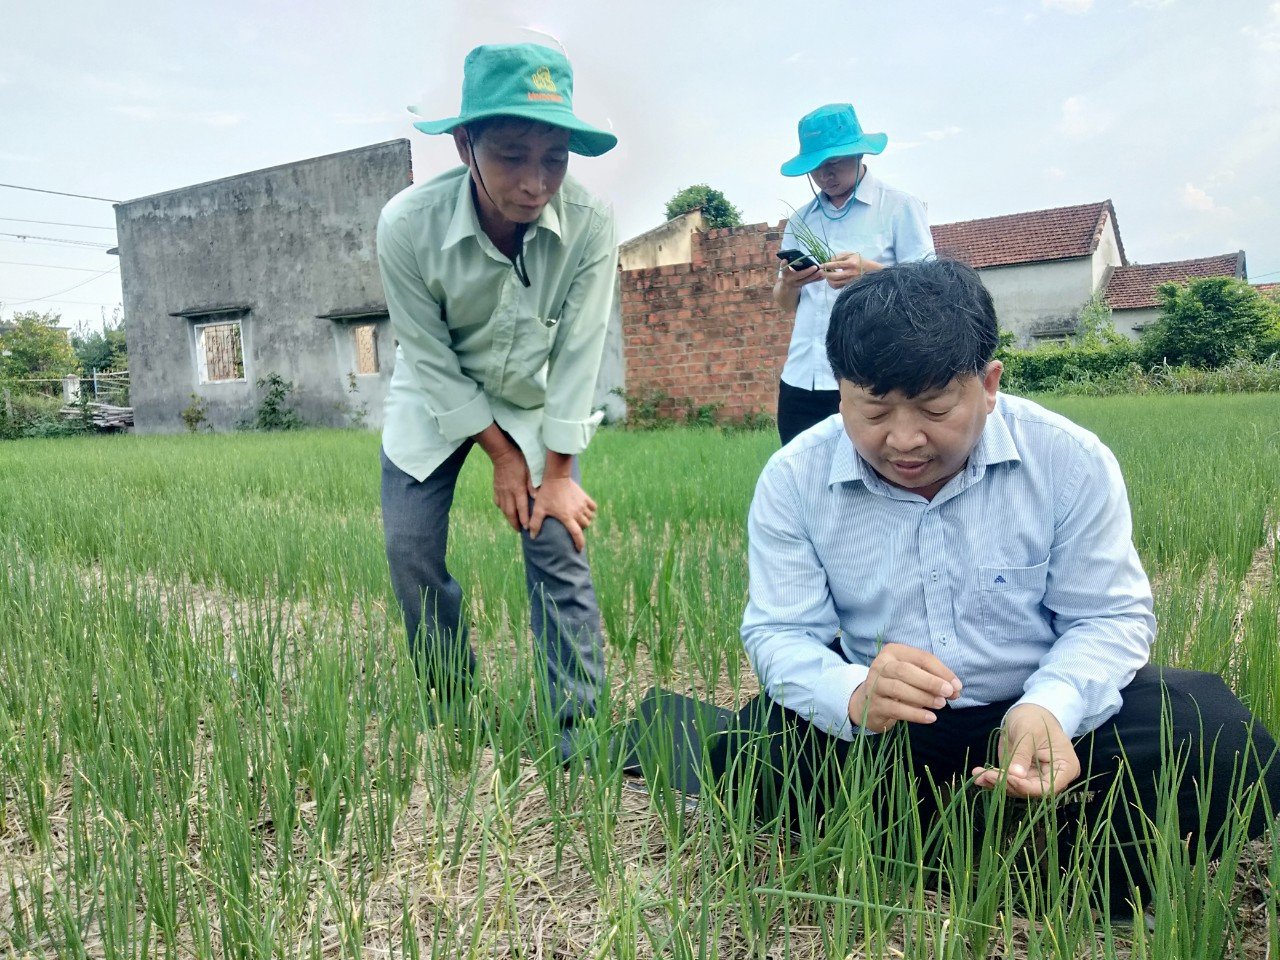 Đào tạo nghề tại ruộng vườn, nông dân Bình Định thu hiệu quả thiết thực - Ảnh 2.